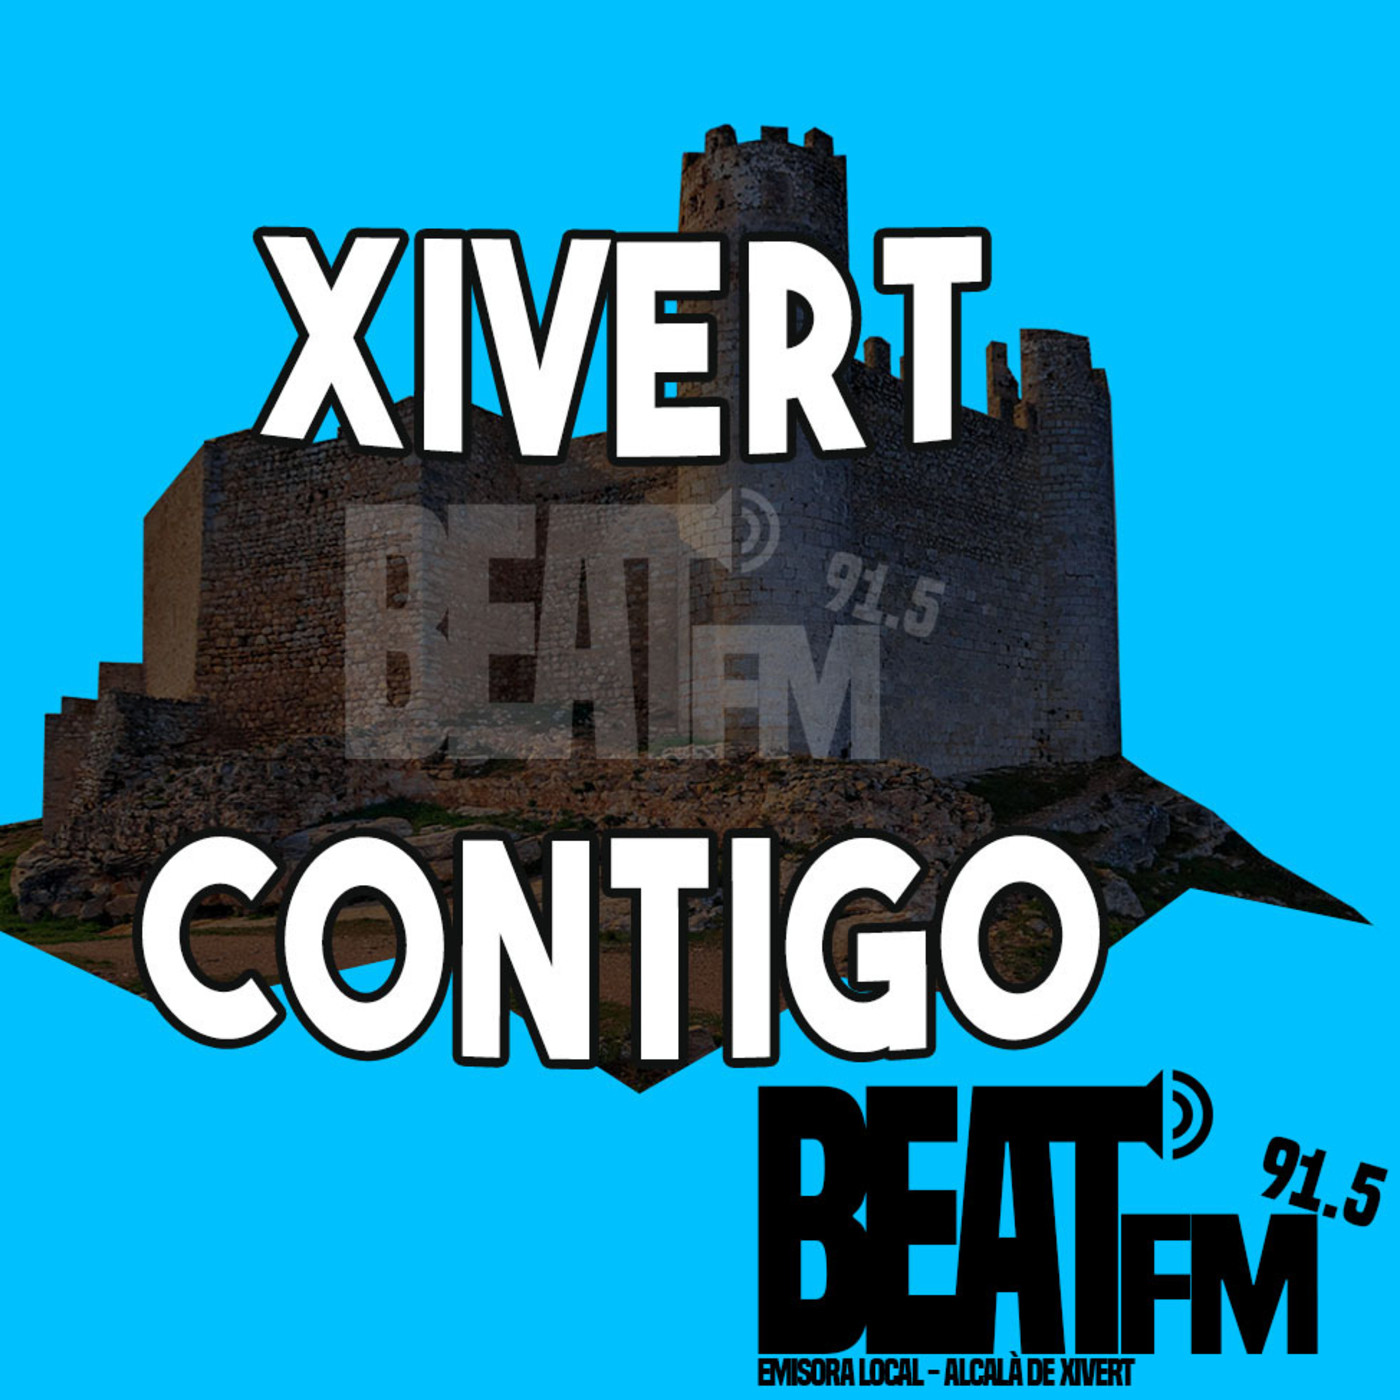 Xivert Contigo 06 10/01/2020